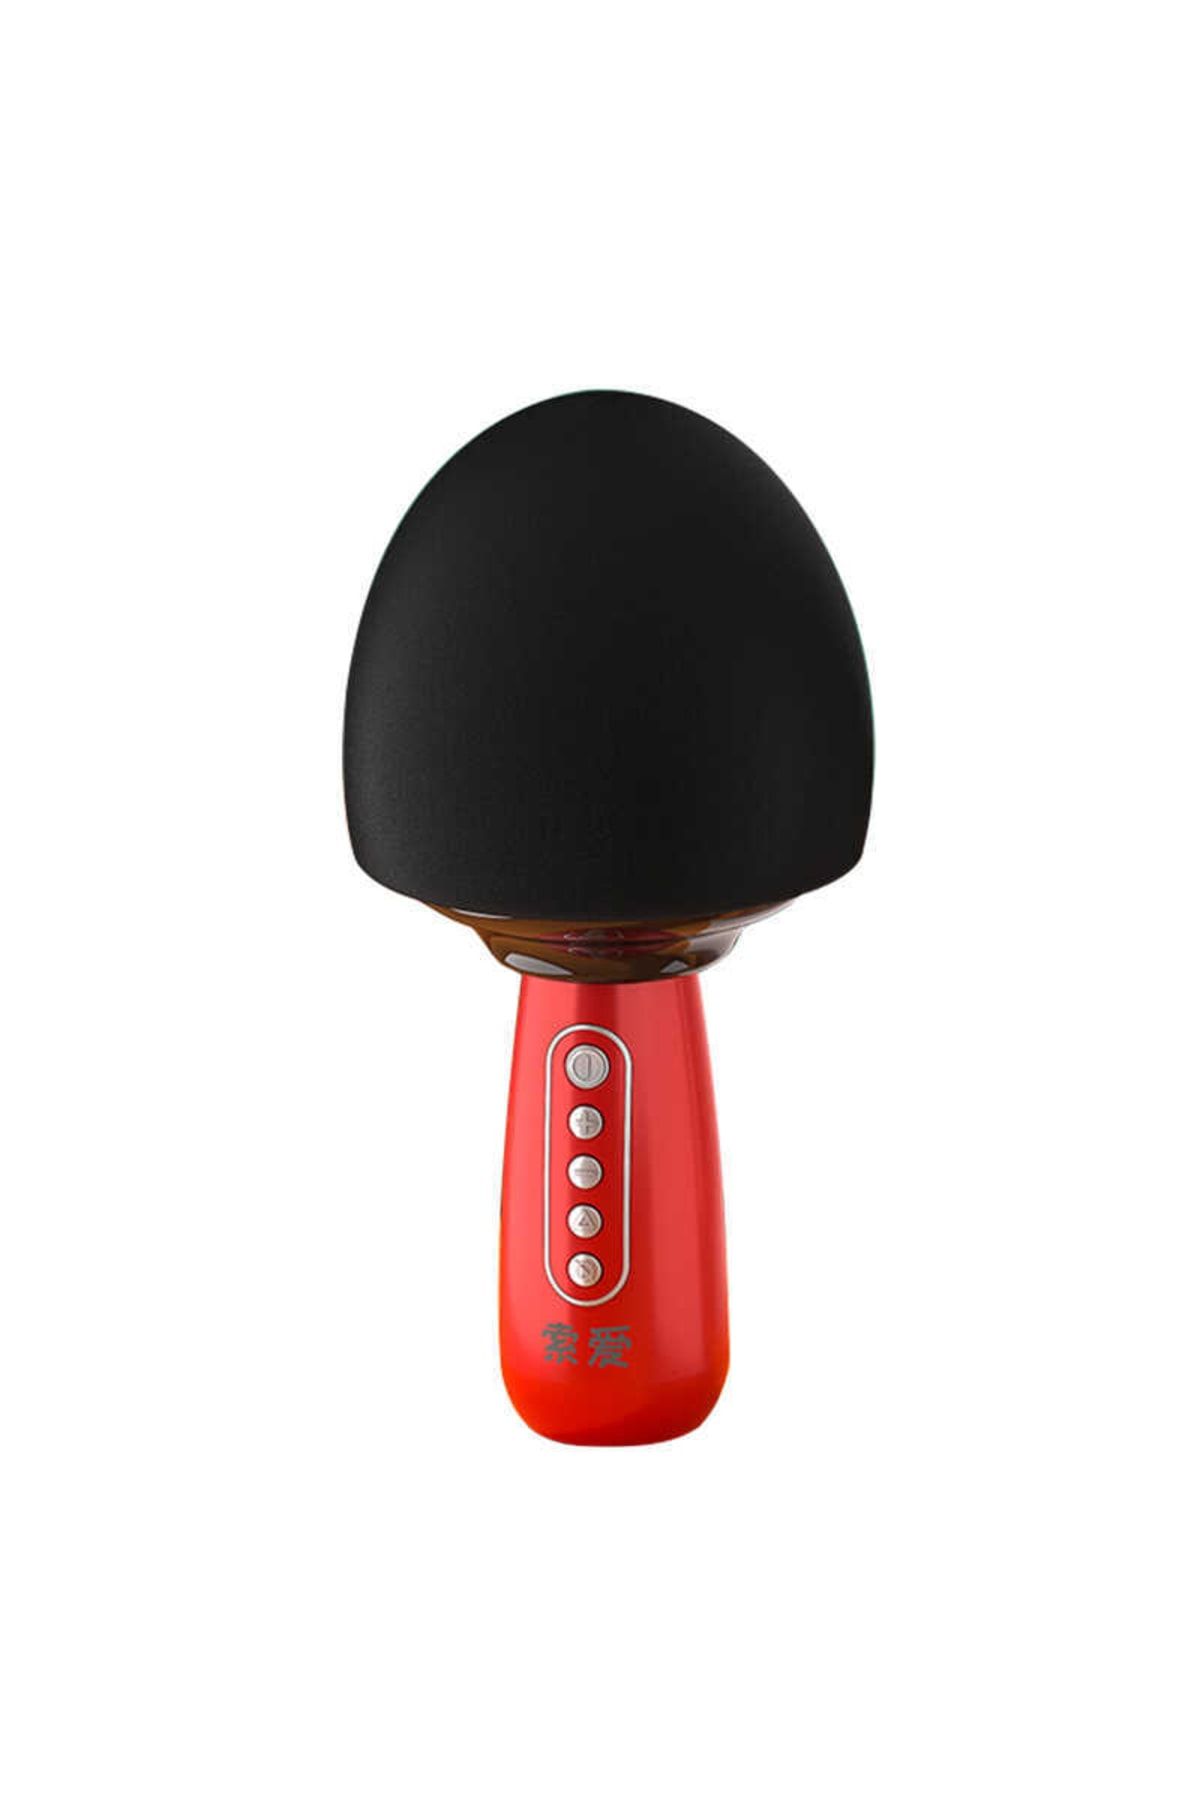 Soaiy Mc15 Karaoke Mikrofon  Bluetooth Hoparlör  Renkli Işıklı  Ses Kaydı  Pro Ses Ayarları